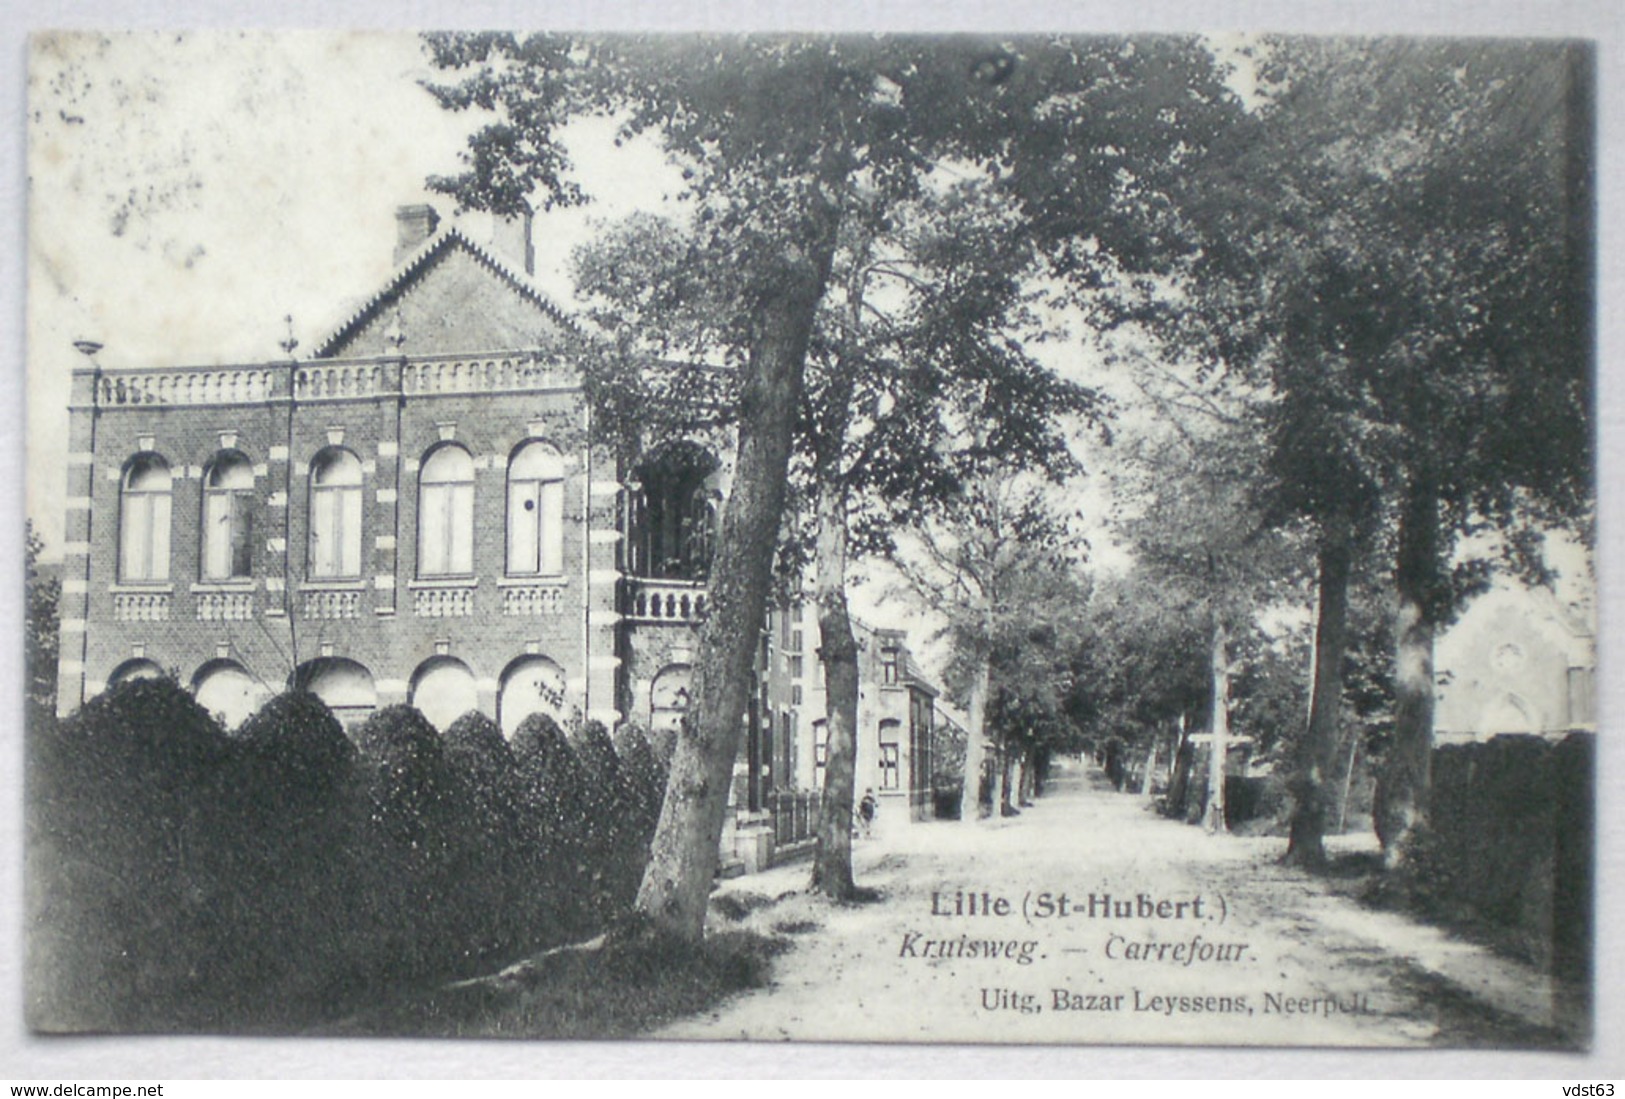 LILLE Sint Huibrechts 1924 Kruisweg Carrefour - Dorpstraat ? - Uitg. Bazar Leyssens, Neerpelt - Saint Hubert - Neerpelt